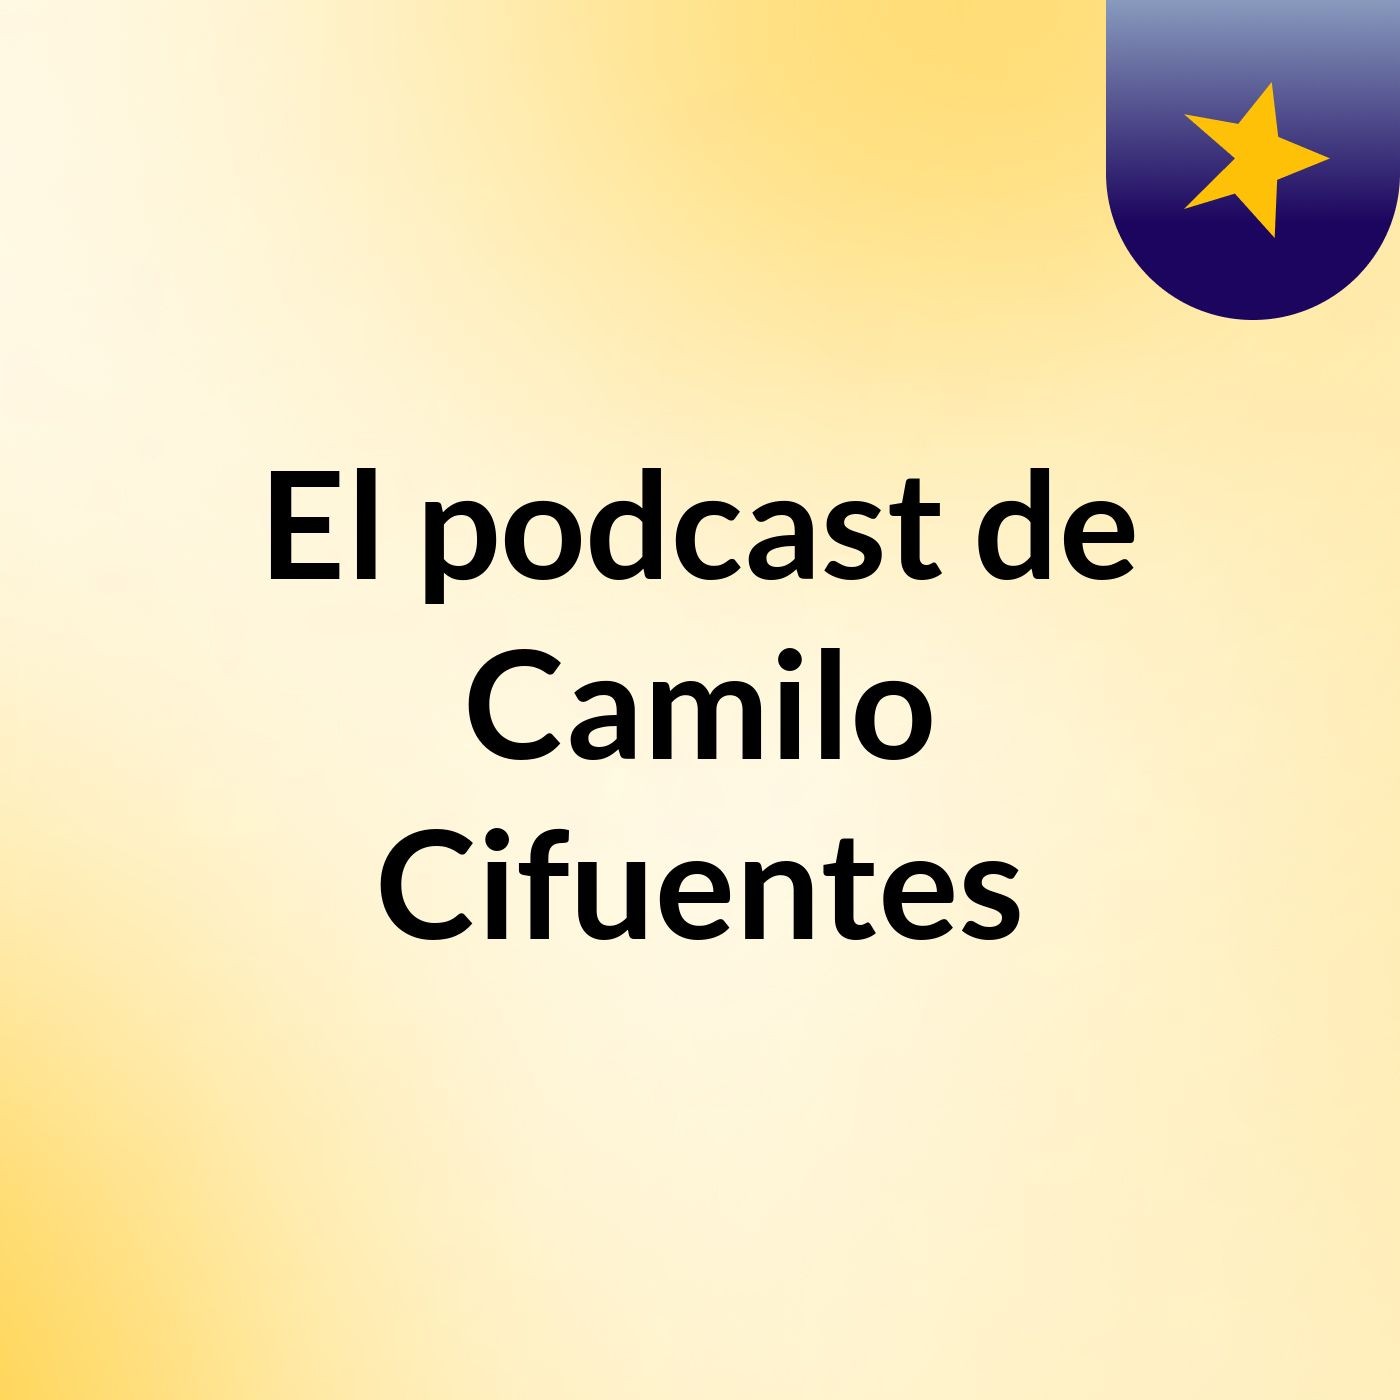 El podcast de Camilo Cifuentes